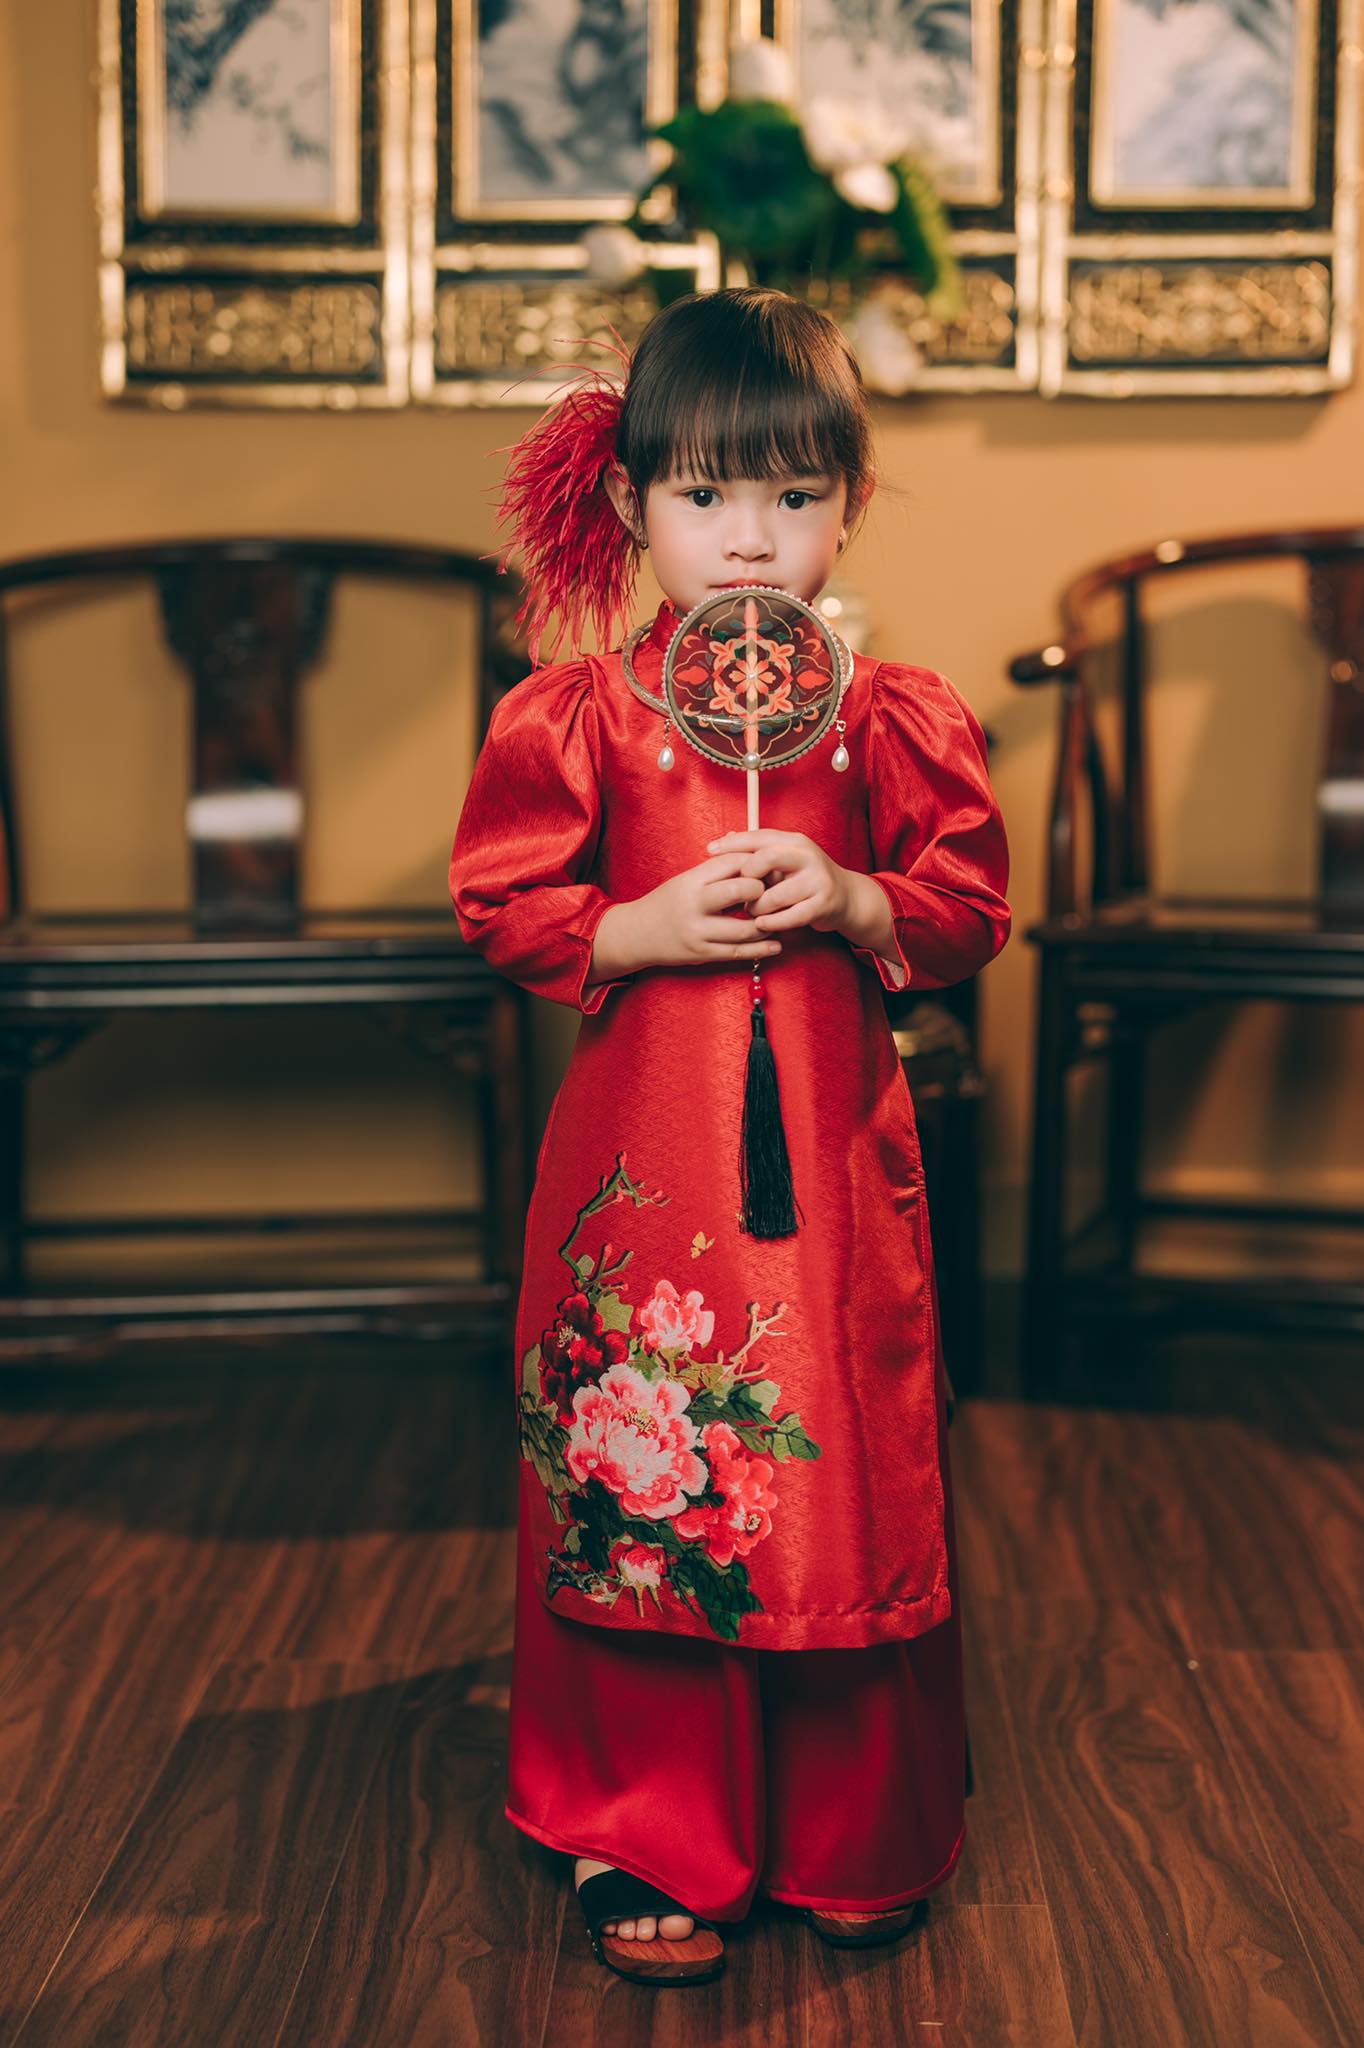 Mê đắm cổ phục, mẹ thiết kế cho con gái loạt áo dài trang trọng, quyền quý, nuôi dưỡng tình yêu và lưu giữ nét truyền thống dân tộc - Ảnh 4.